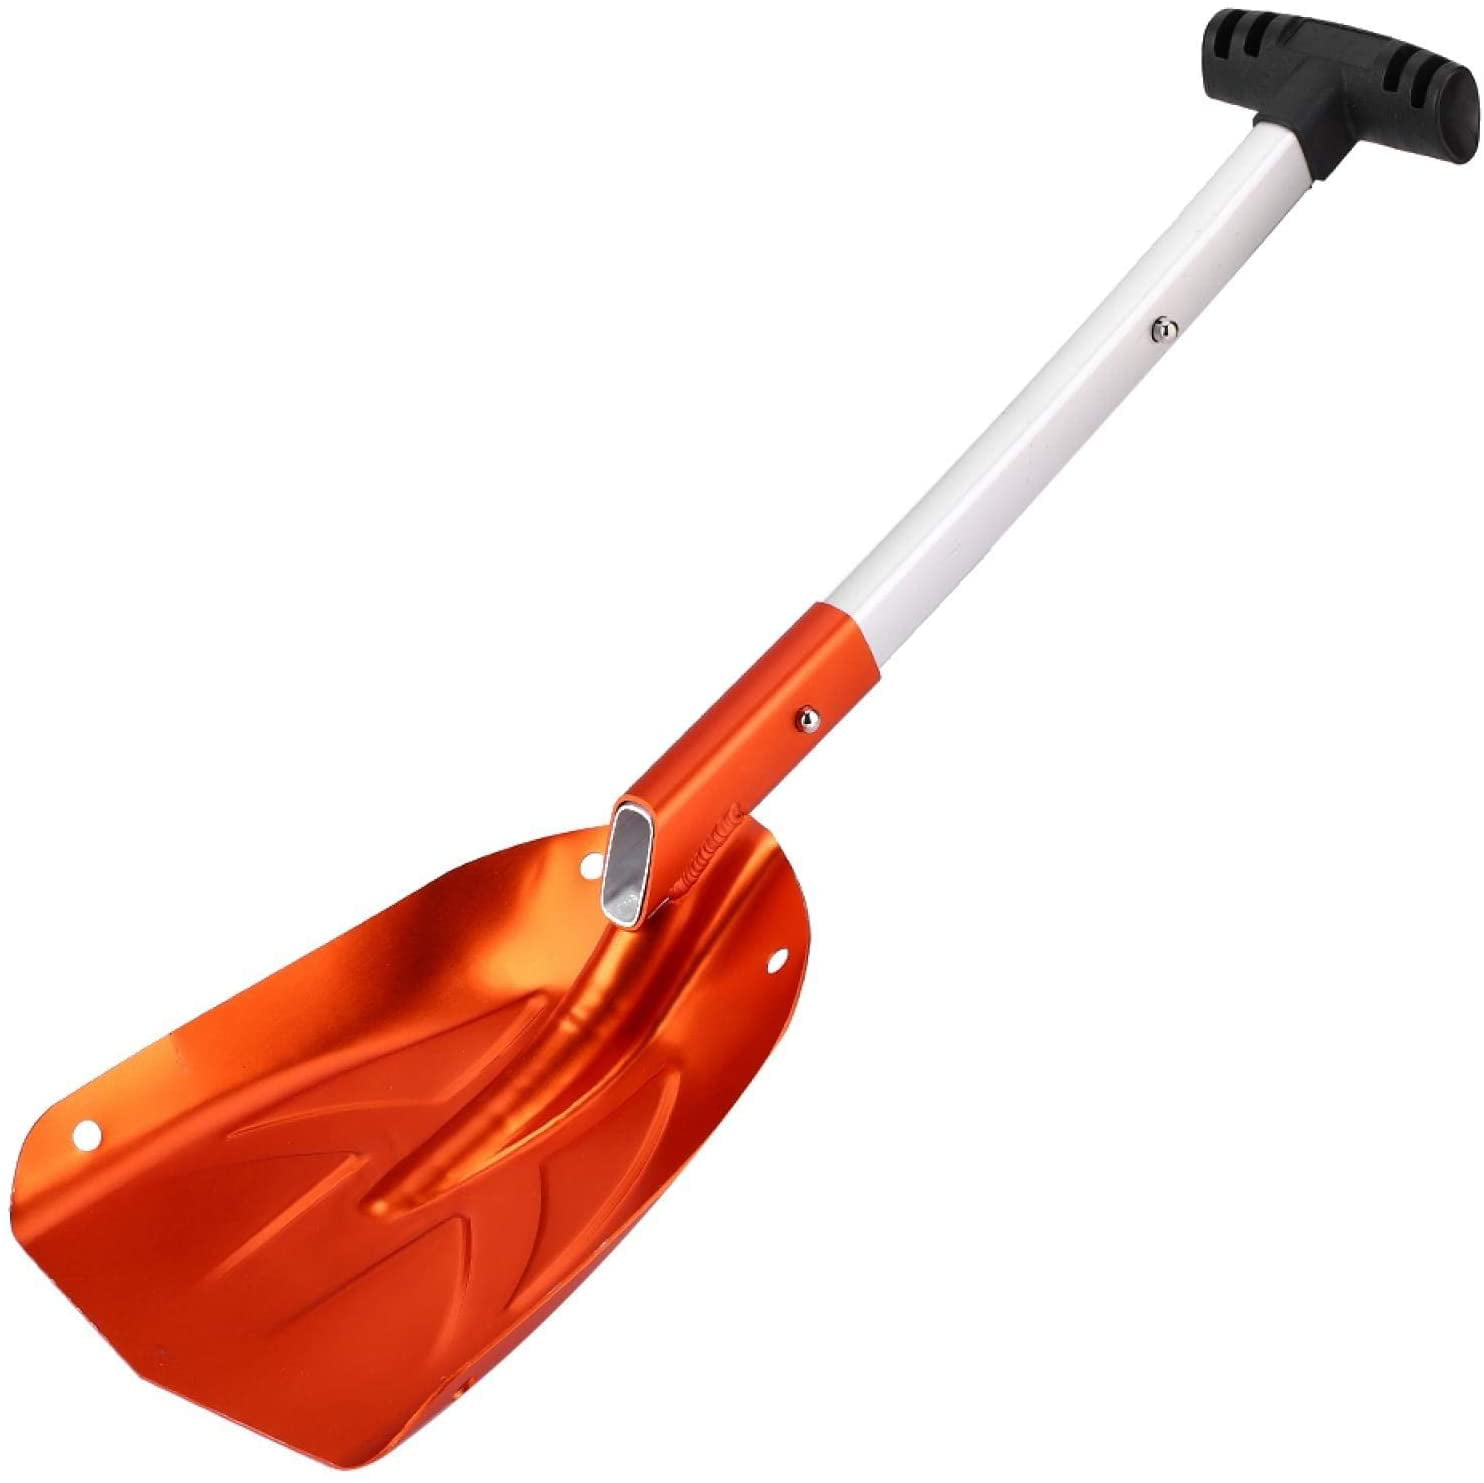 Telescopic Snow Shovel Snow Shovel with Skidproof Handle Shovel for Car for Home Jacksing Snow Shovel